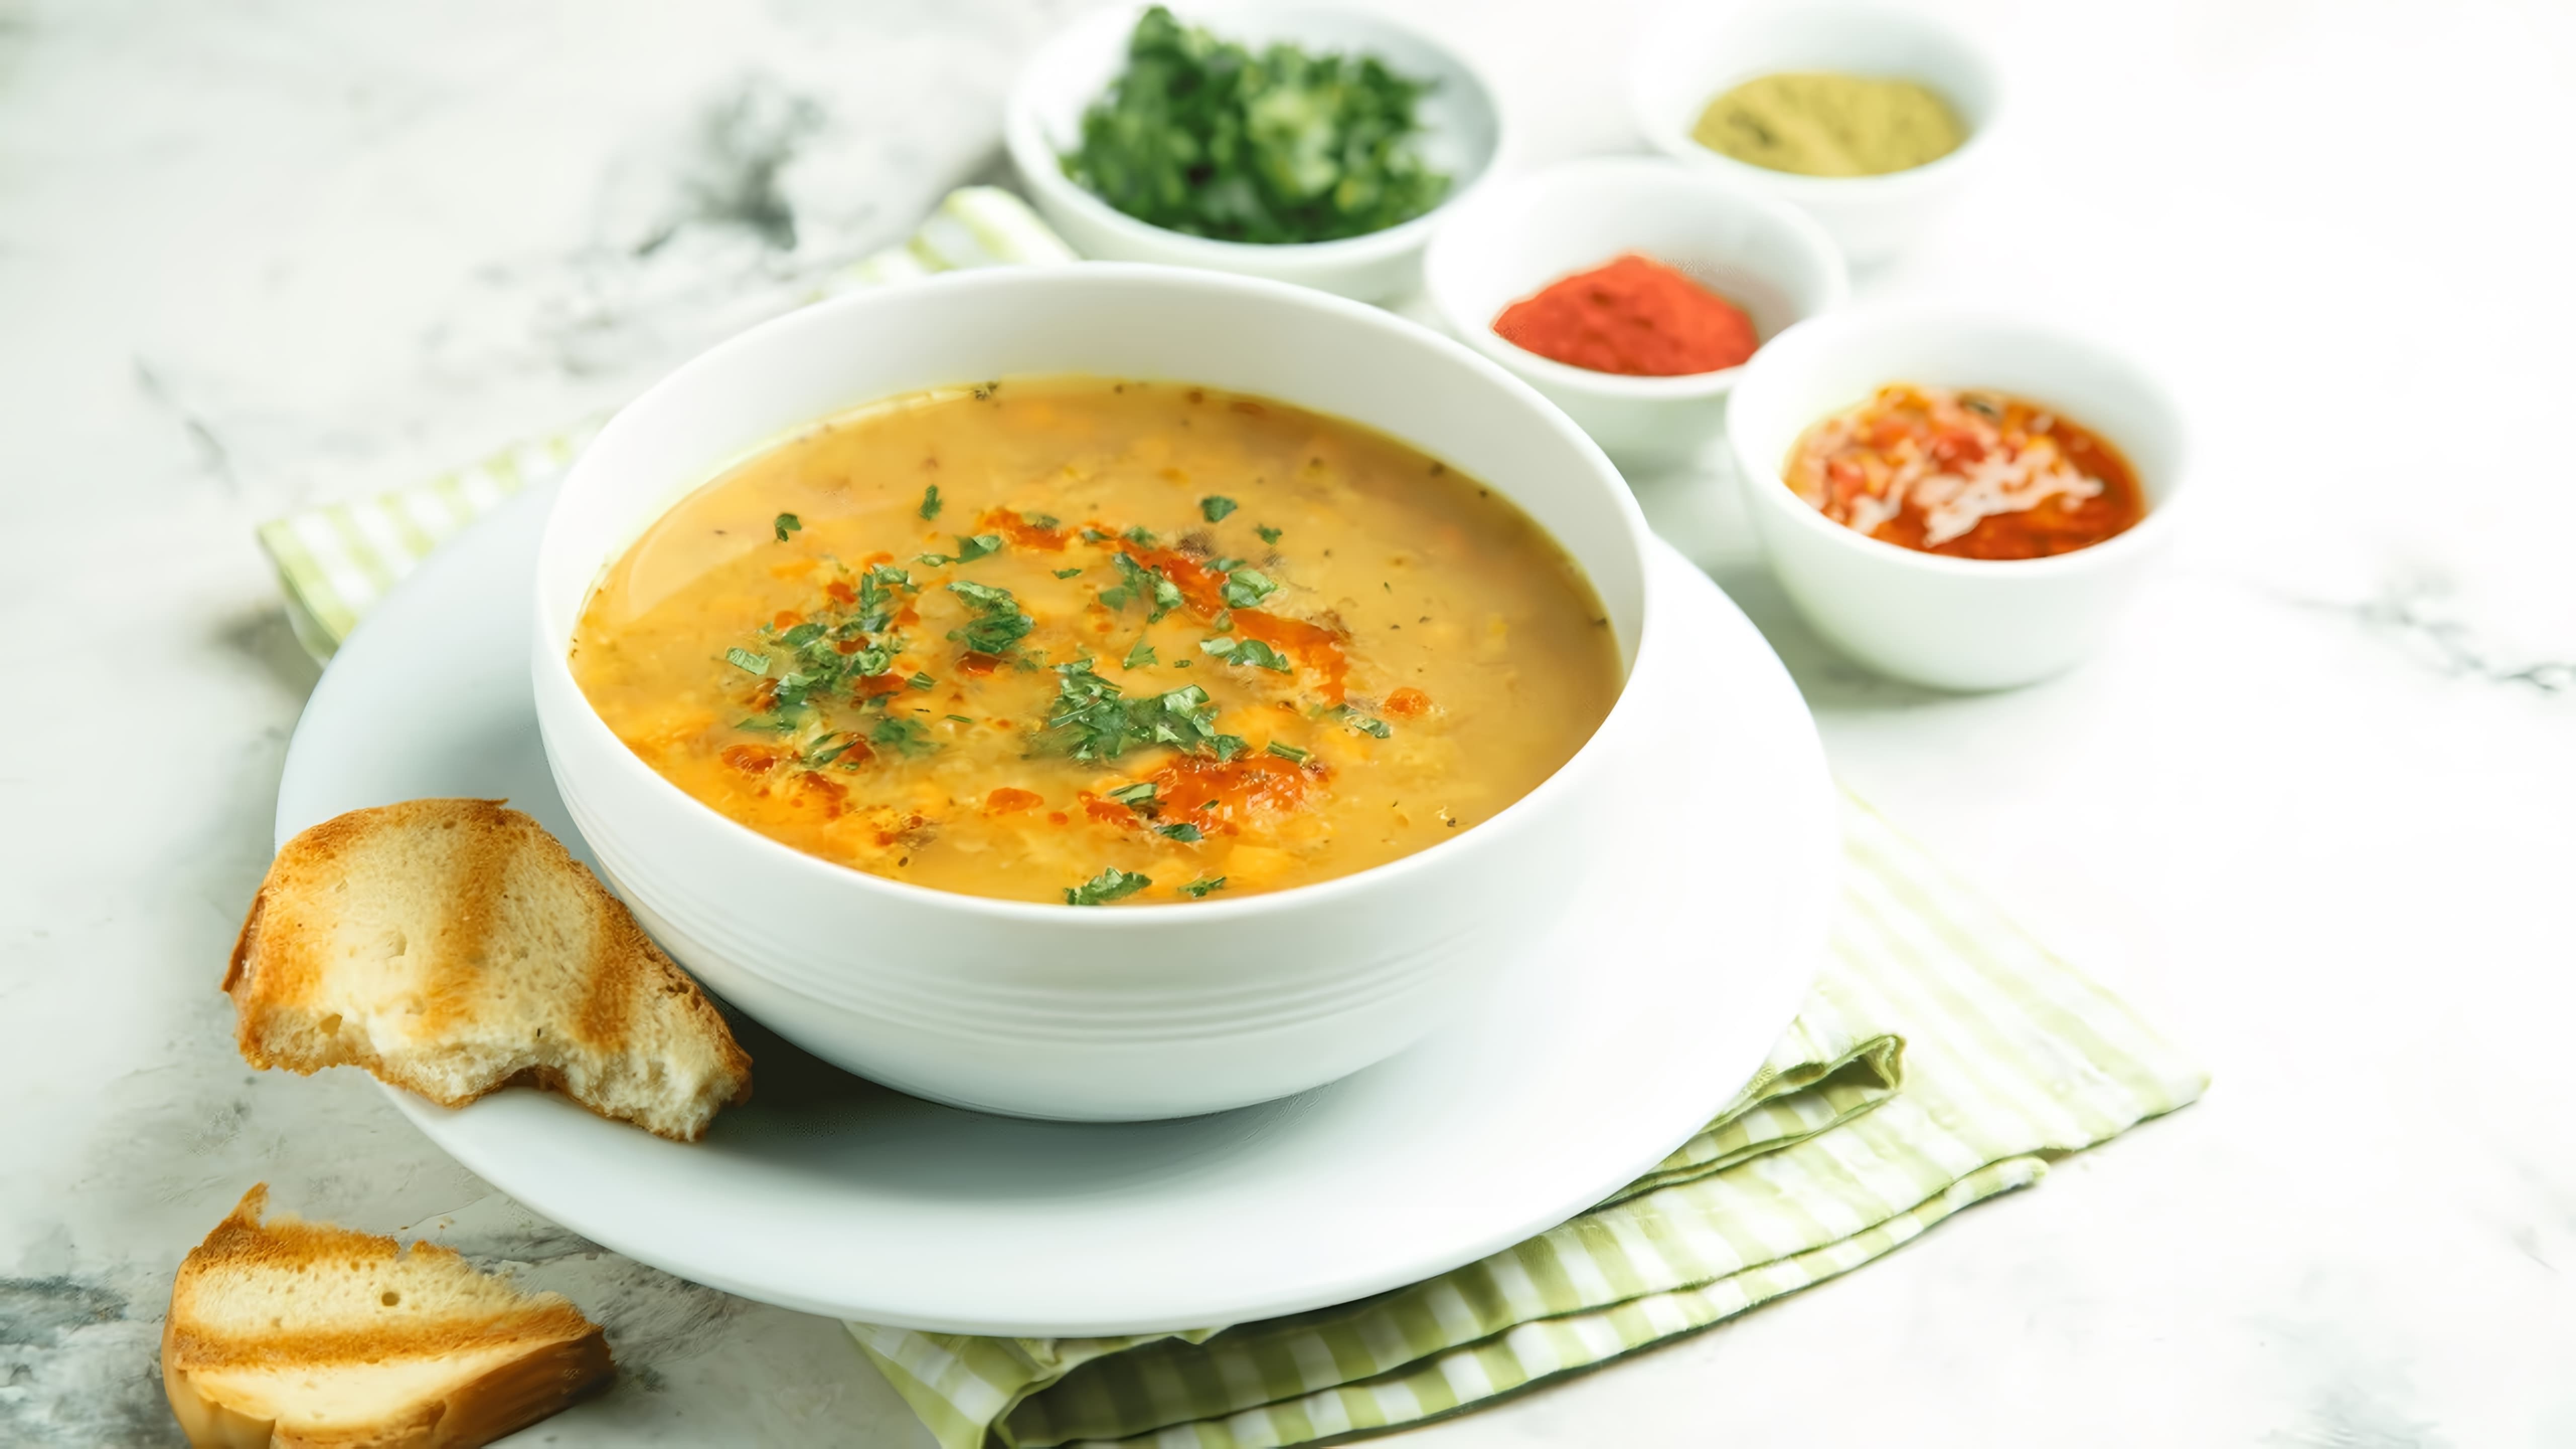 В этом видео демонстрируется рецепт быстрого приготовления горохового супа